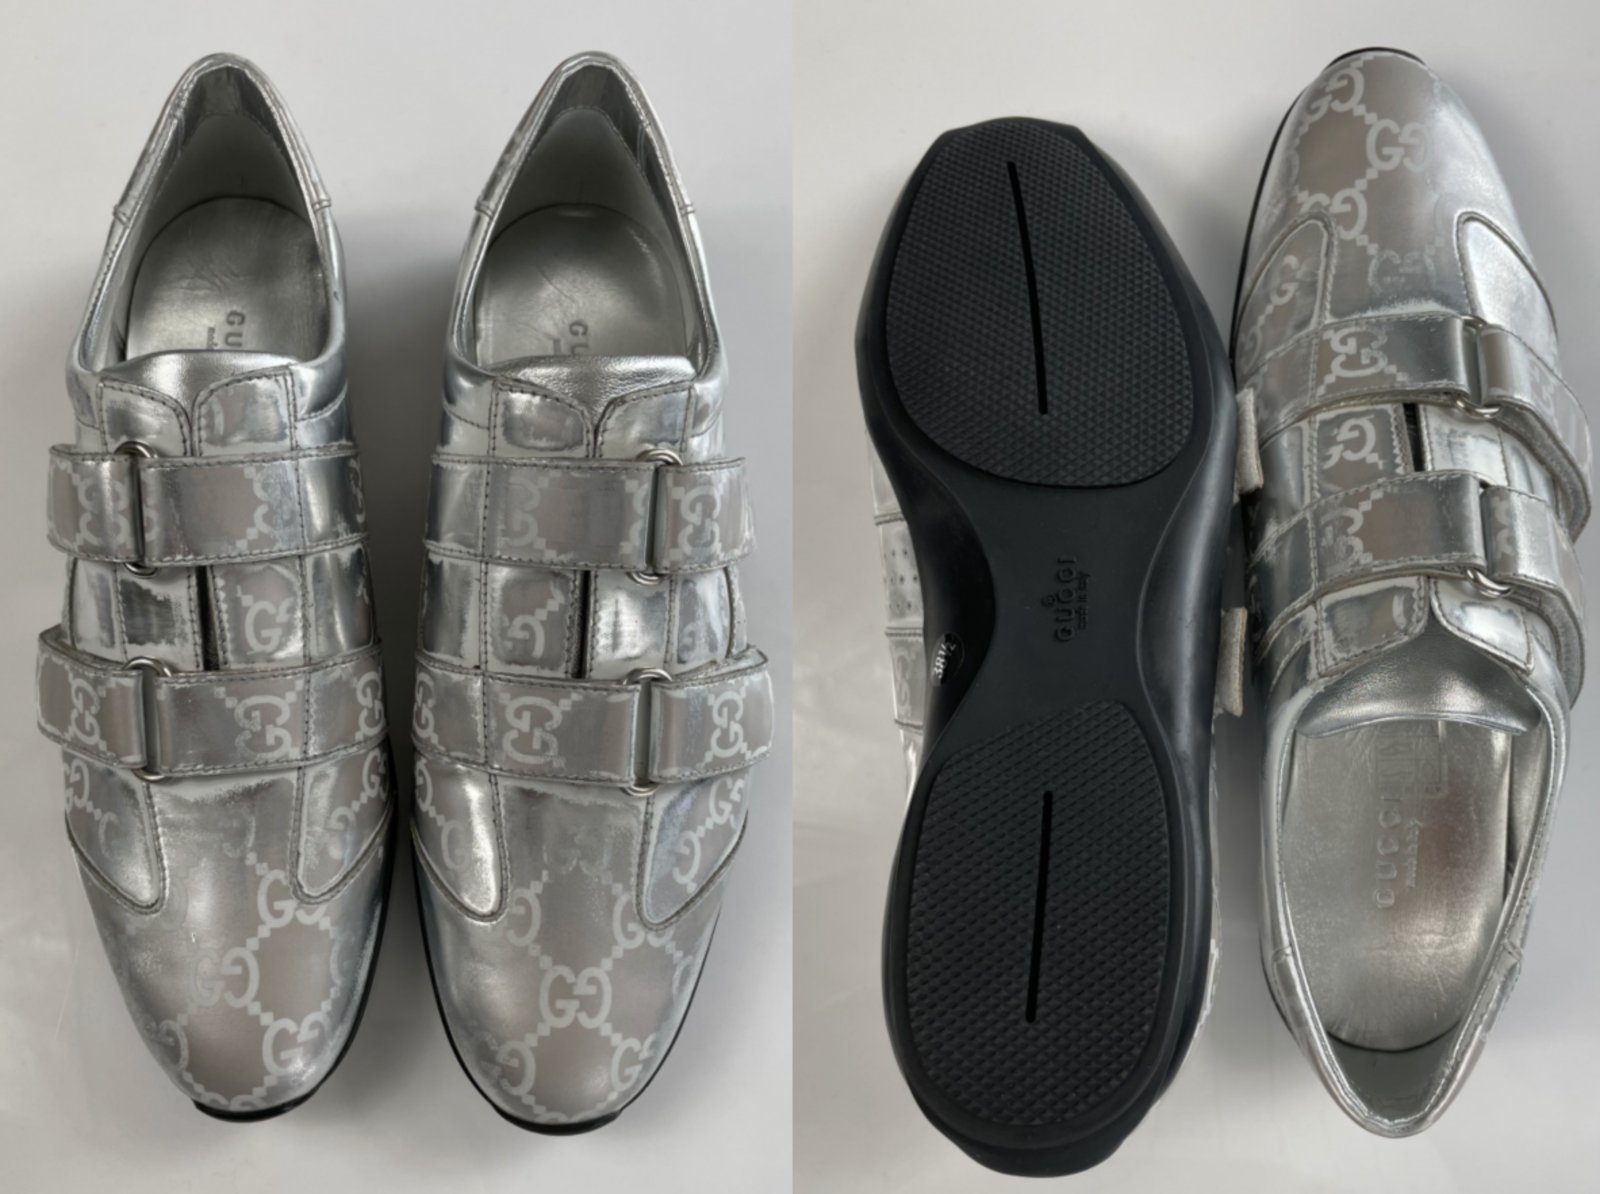 GUCCI Gucci Iconic Logo Leather Кросівкиs Trainers Взуття Shoes Turnschuhe 40 Кросівки